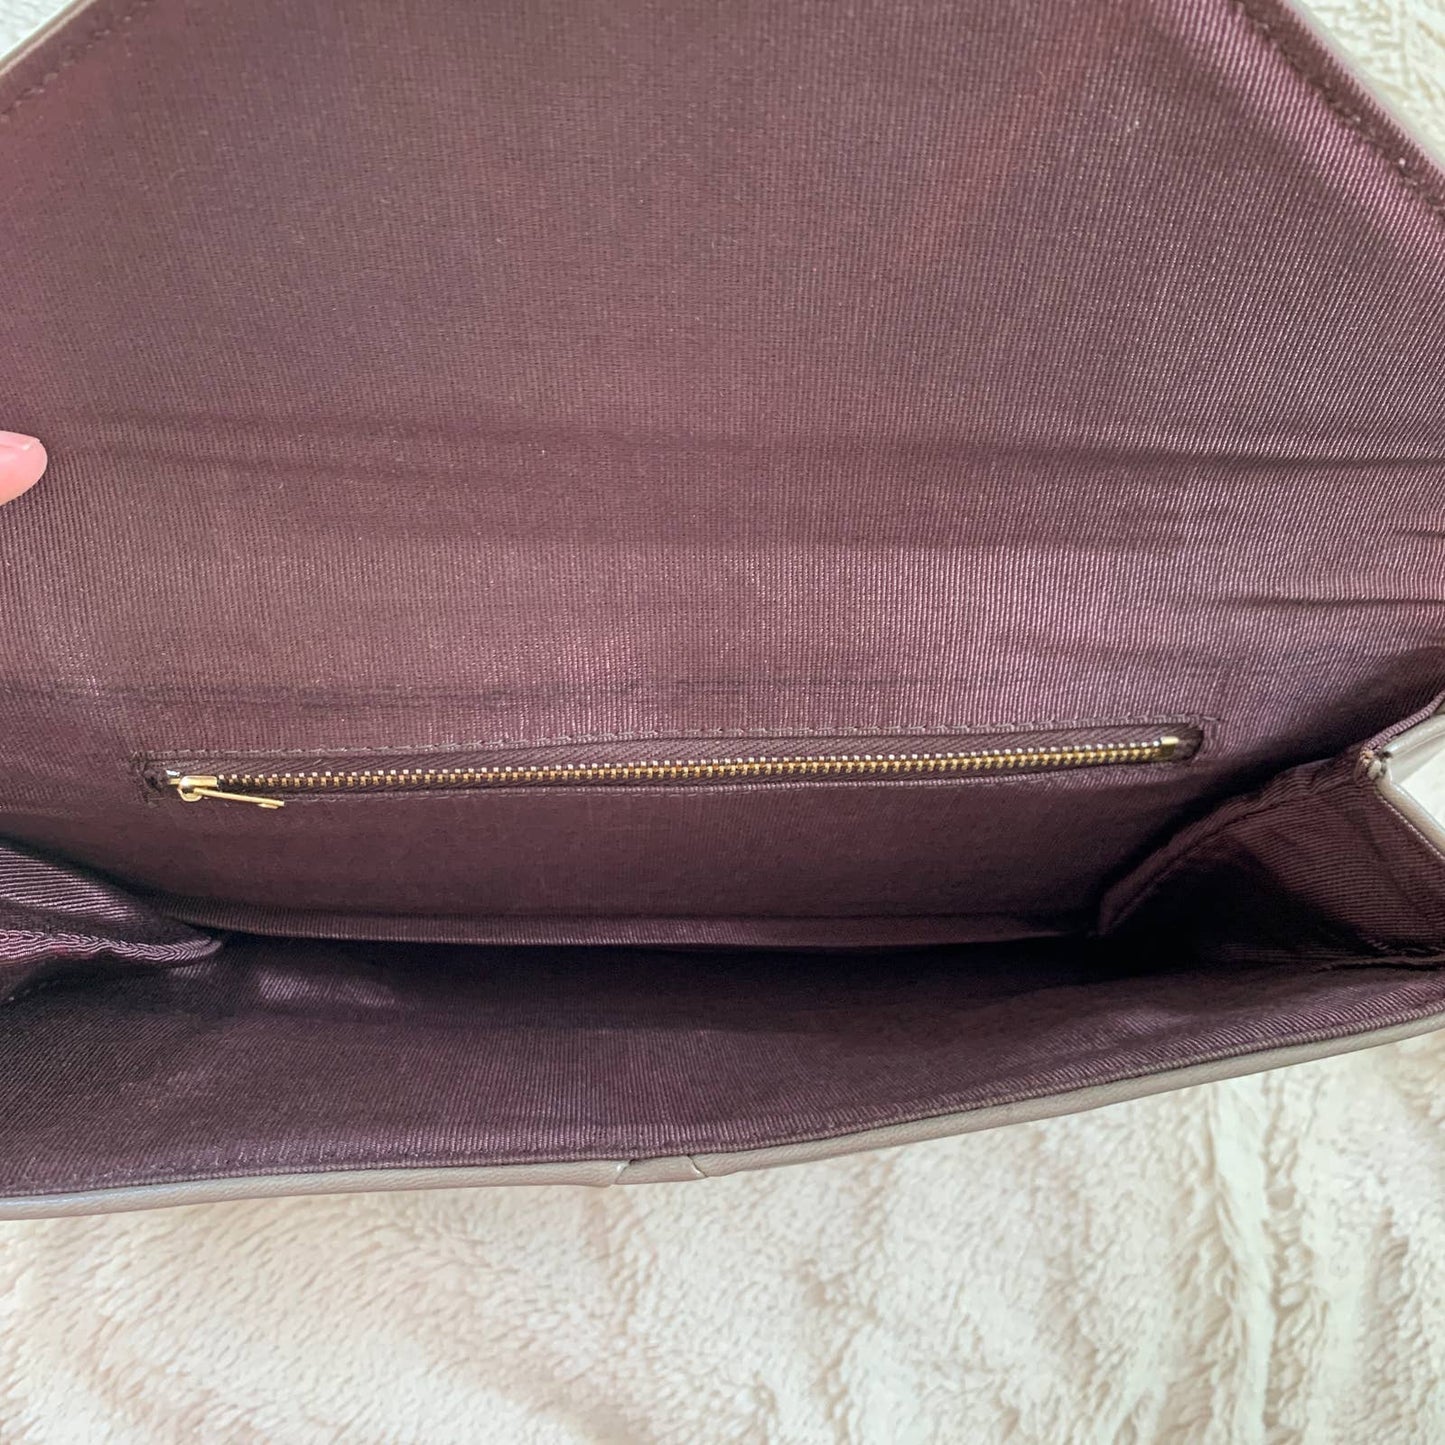 VINTAGE 80s gray leather large envelope style shoulder bag